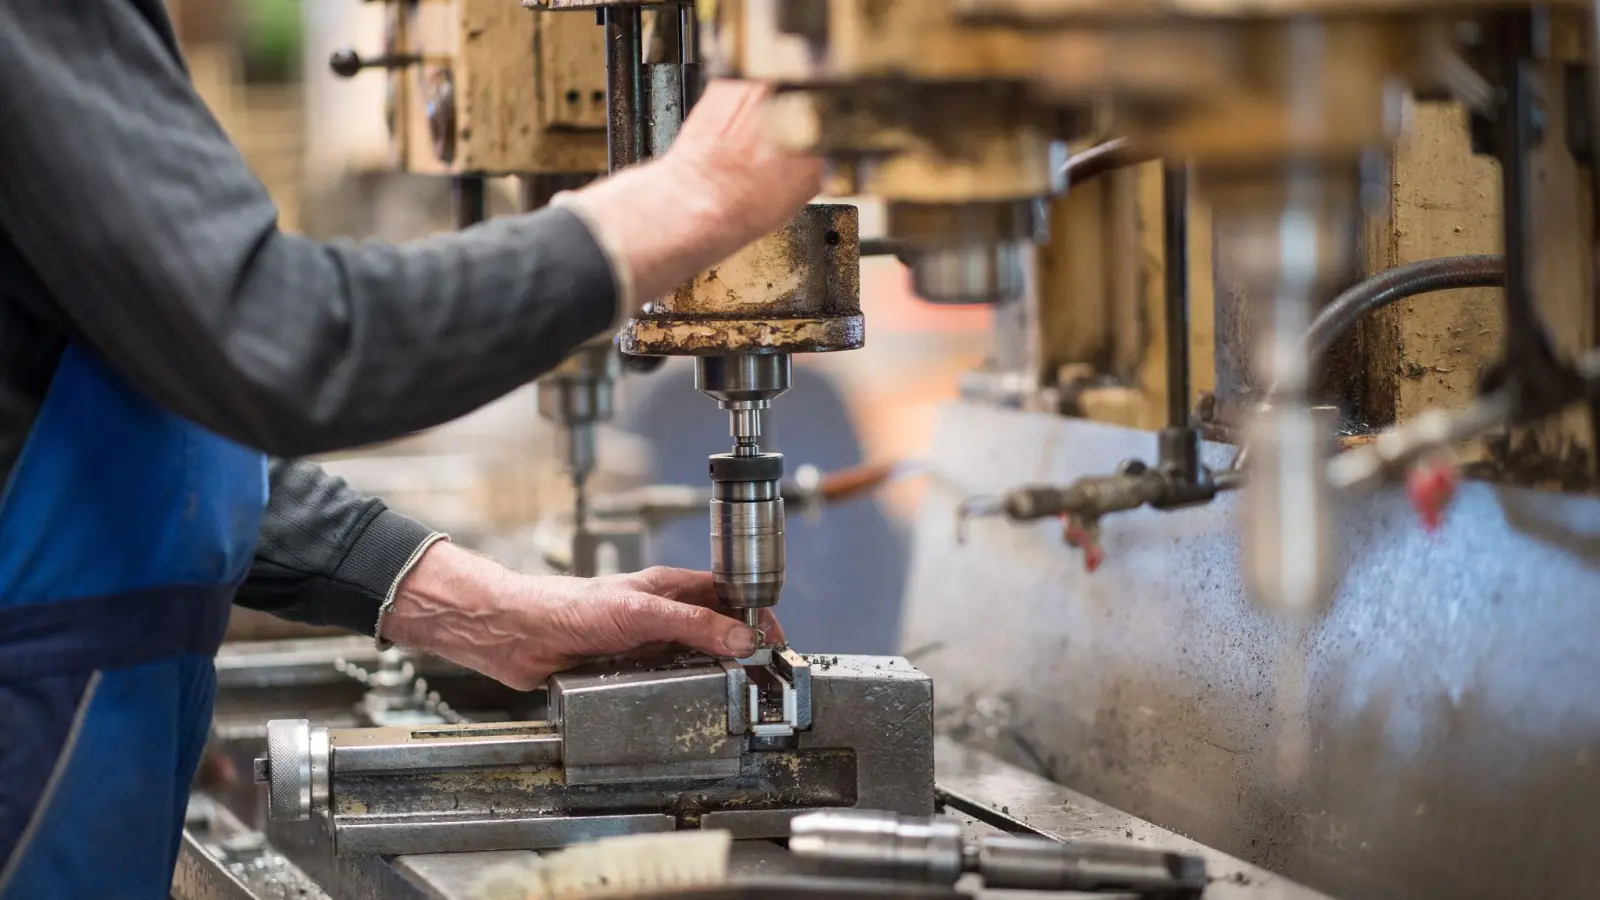 Ein Mitarbeiter bedient in einer brandenburgischen Produktionshalle eine Maschine zur Verarbeitung von Metall. Die deutsche Wirtschaft ist nach dem frostigen Konjunkturwinter auch im Frühjahr nicht in Schwung gekommen. (Foto: Monika Skolimowska/zb/dpa)